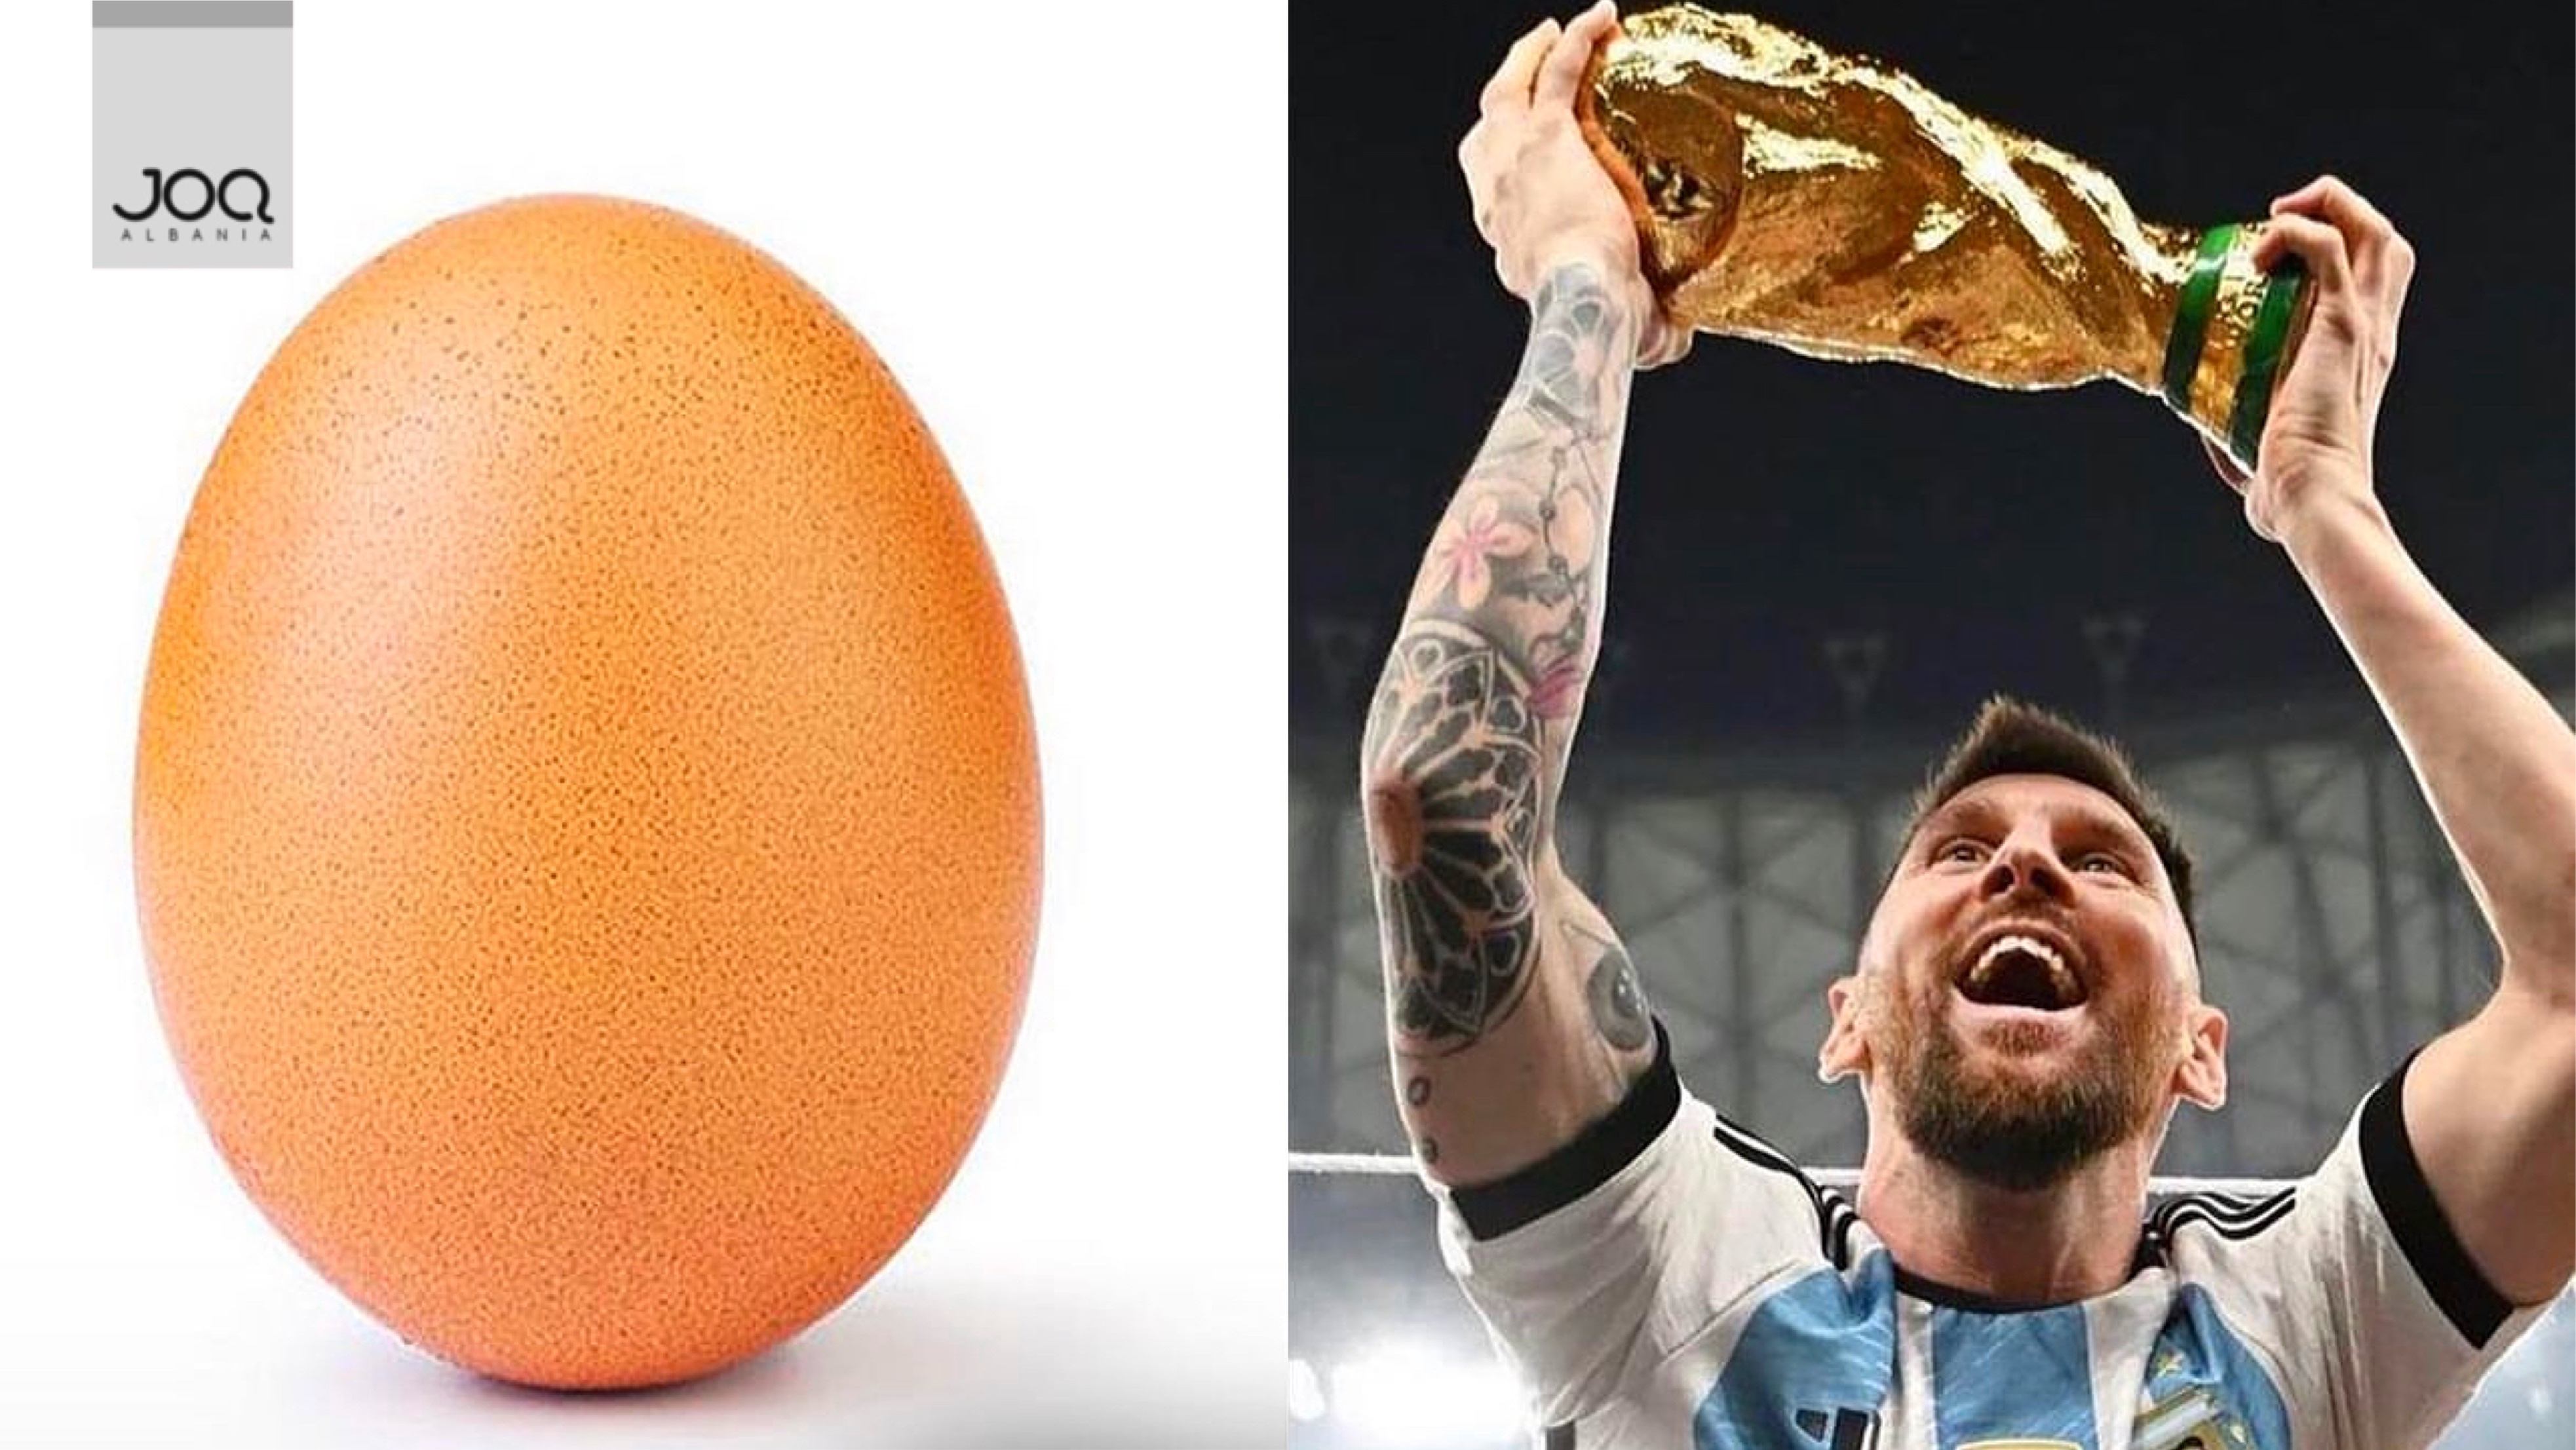 Njerëzit po i bëjnë “UNLIKE vezës”, që Messi me kupën e botës të thyejë rekordin e fotos më të pëlqyer